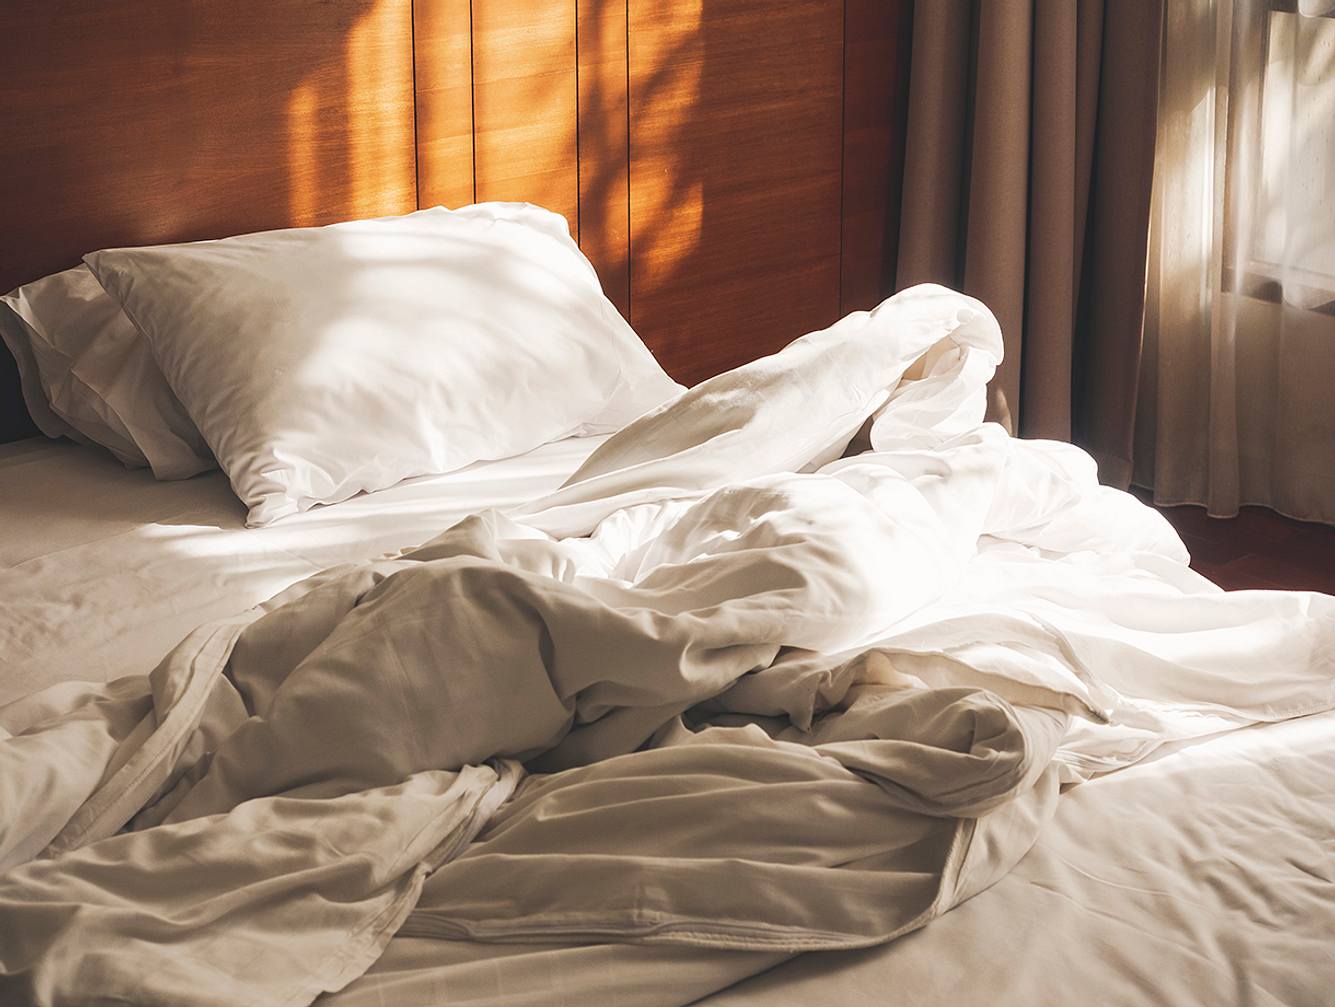 Ein Bett mit Bio-Bettwäsche bezogenem Kissen und Bettdecke.